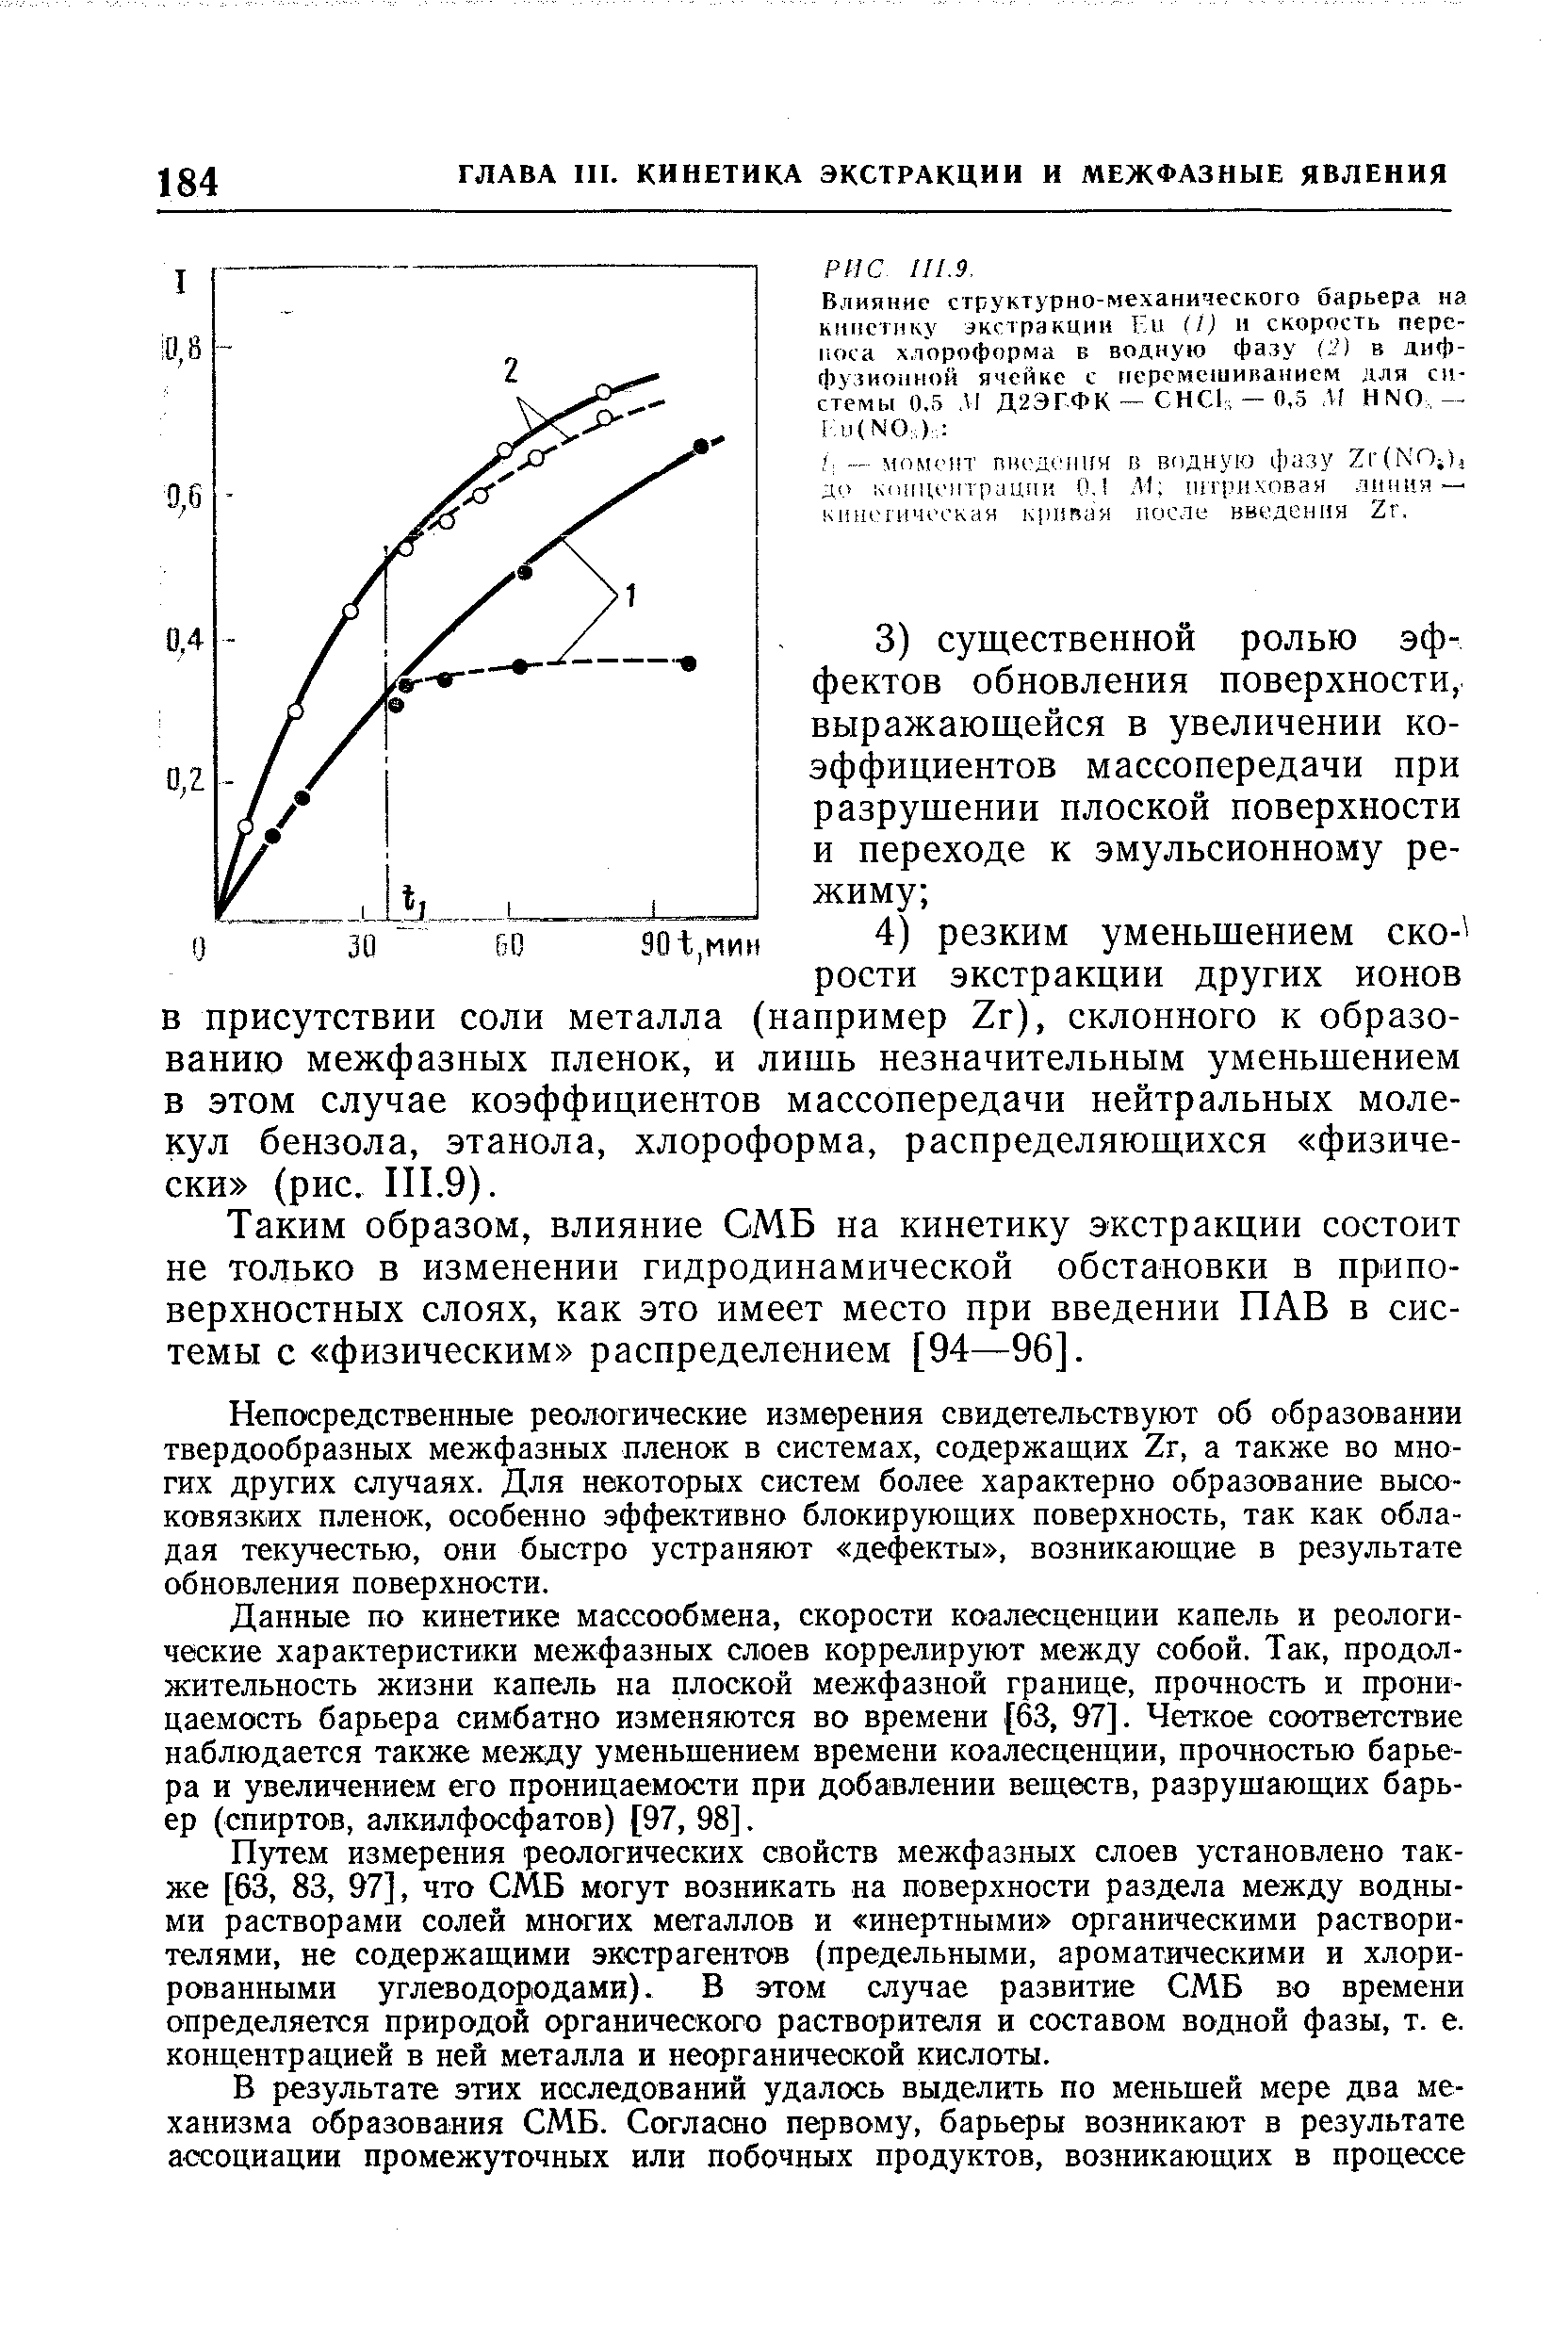 Таким образом, влияние СМБ на кинетику экстракции состоит не только в изменении гидродинамической обстановки в приповерхностных слоях, как это имеет место при введении ПАВ в системы с физическим распределением [94—96].